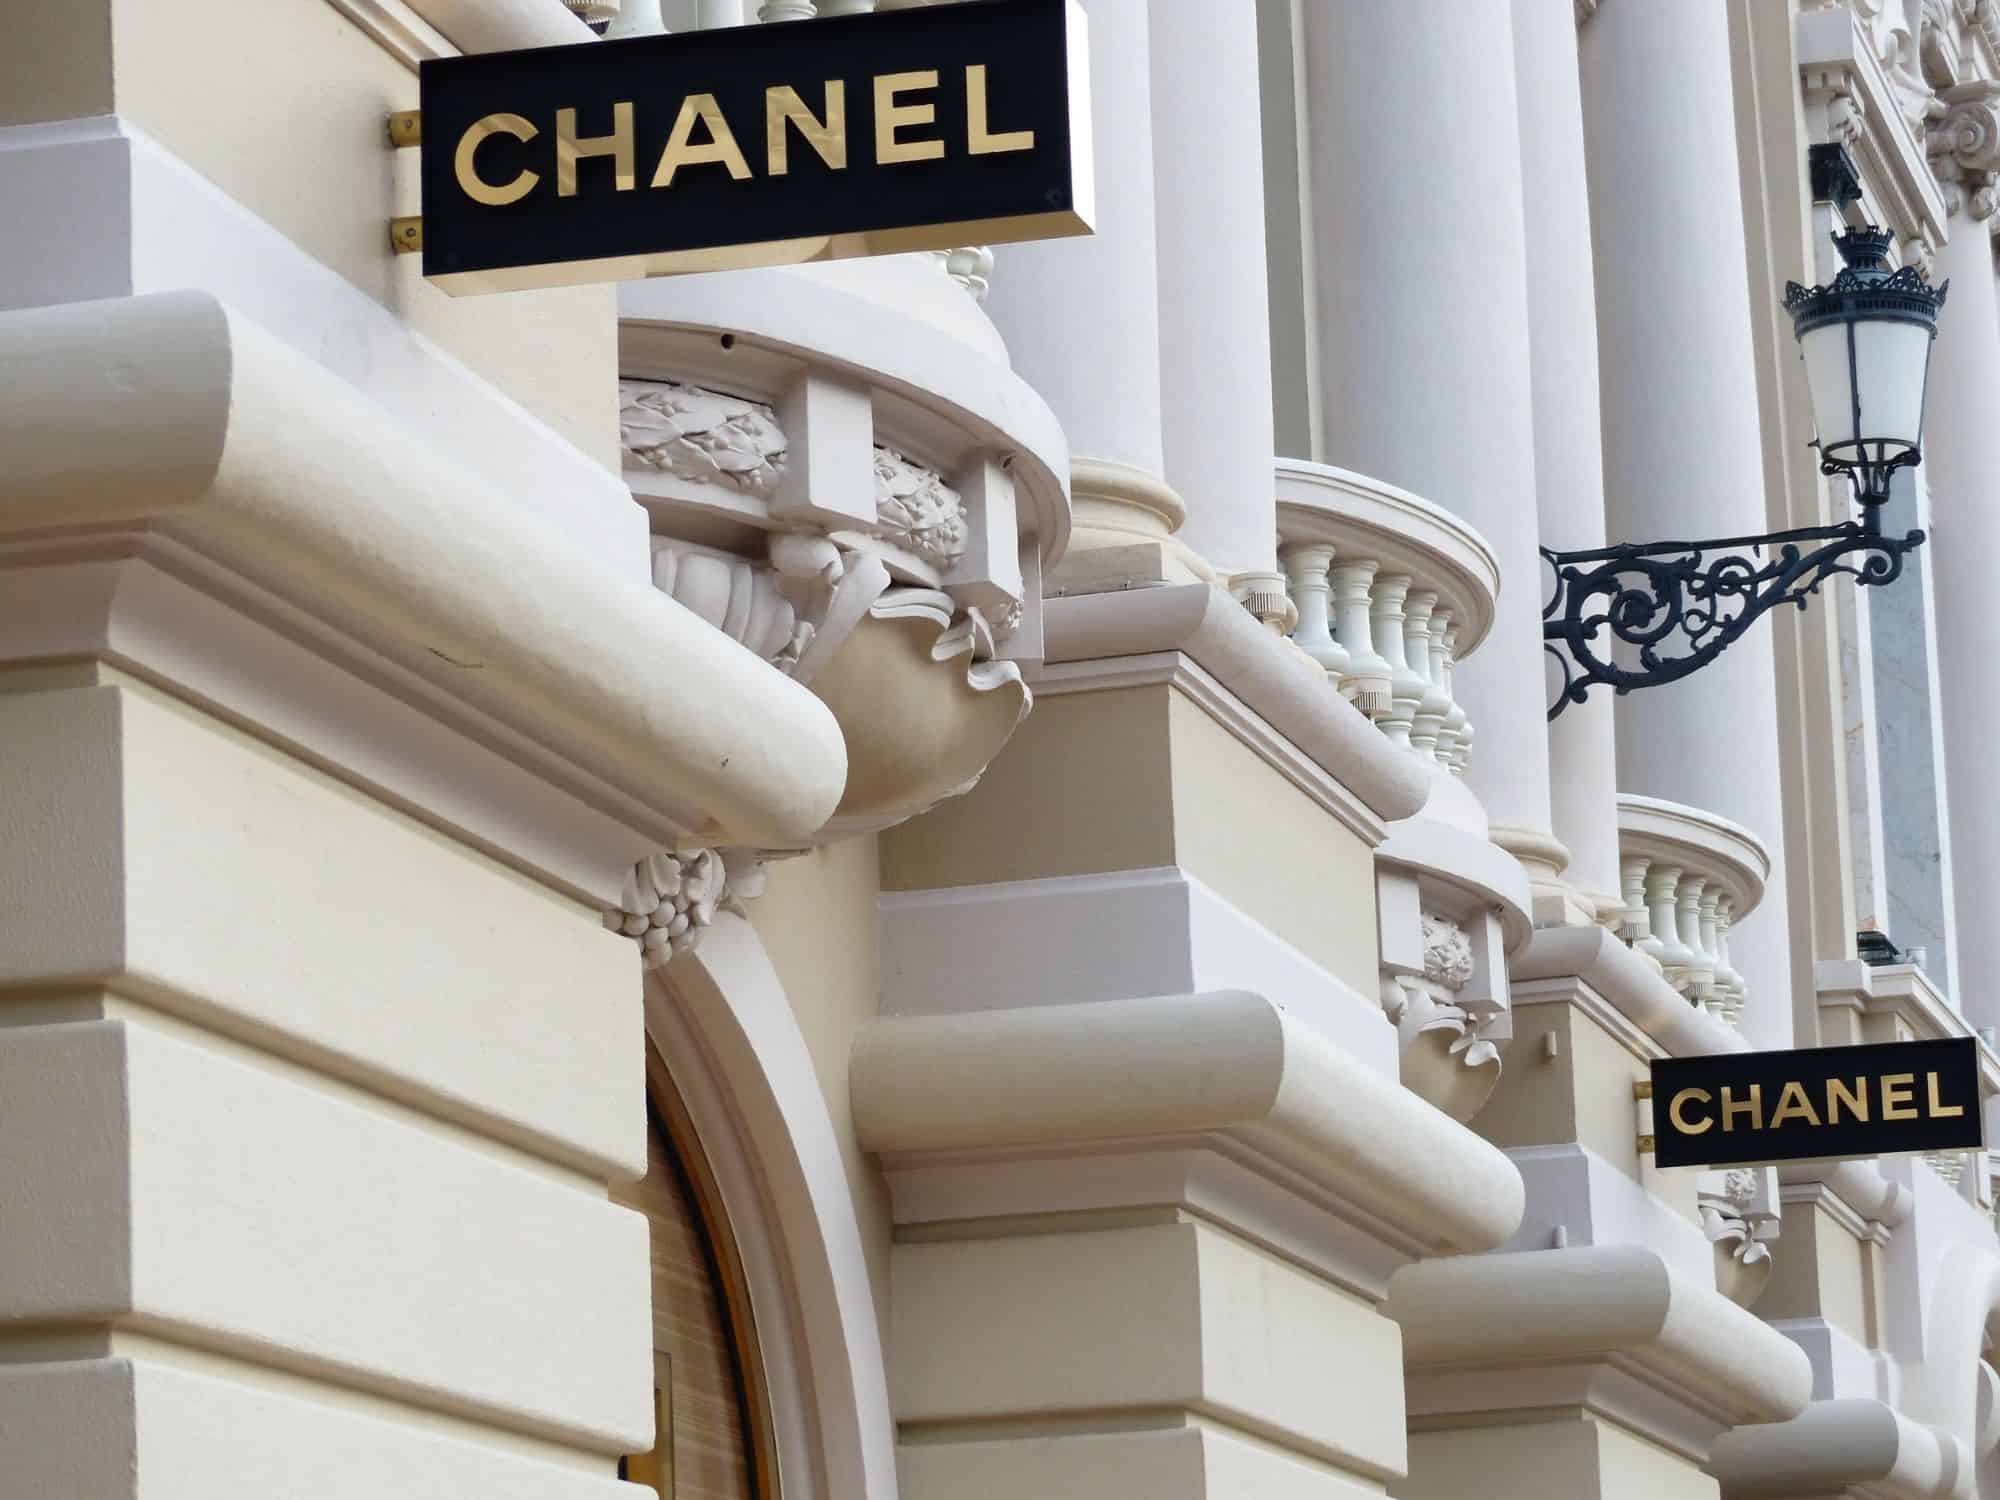 Best place for souvenirs - Chanel on Rue de Faubourg Honoré Paris